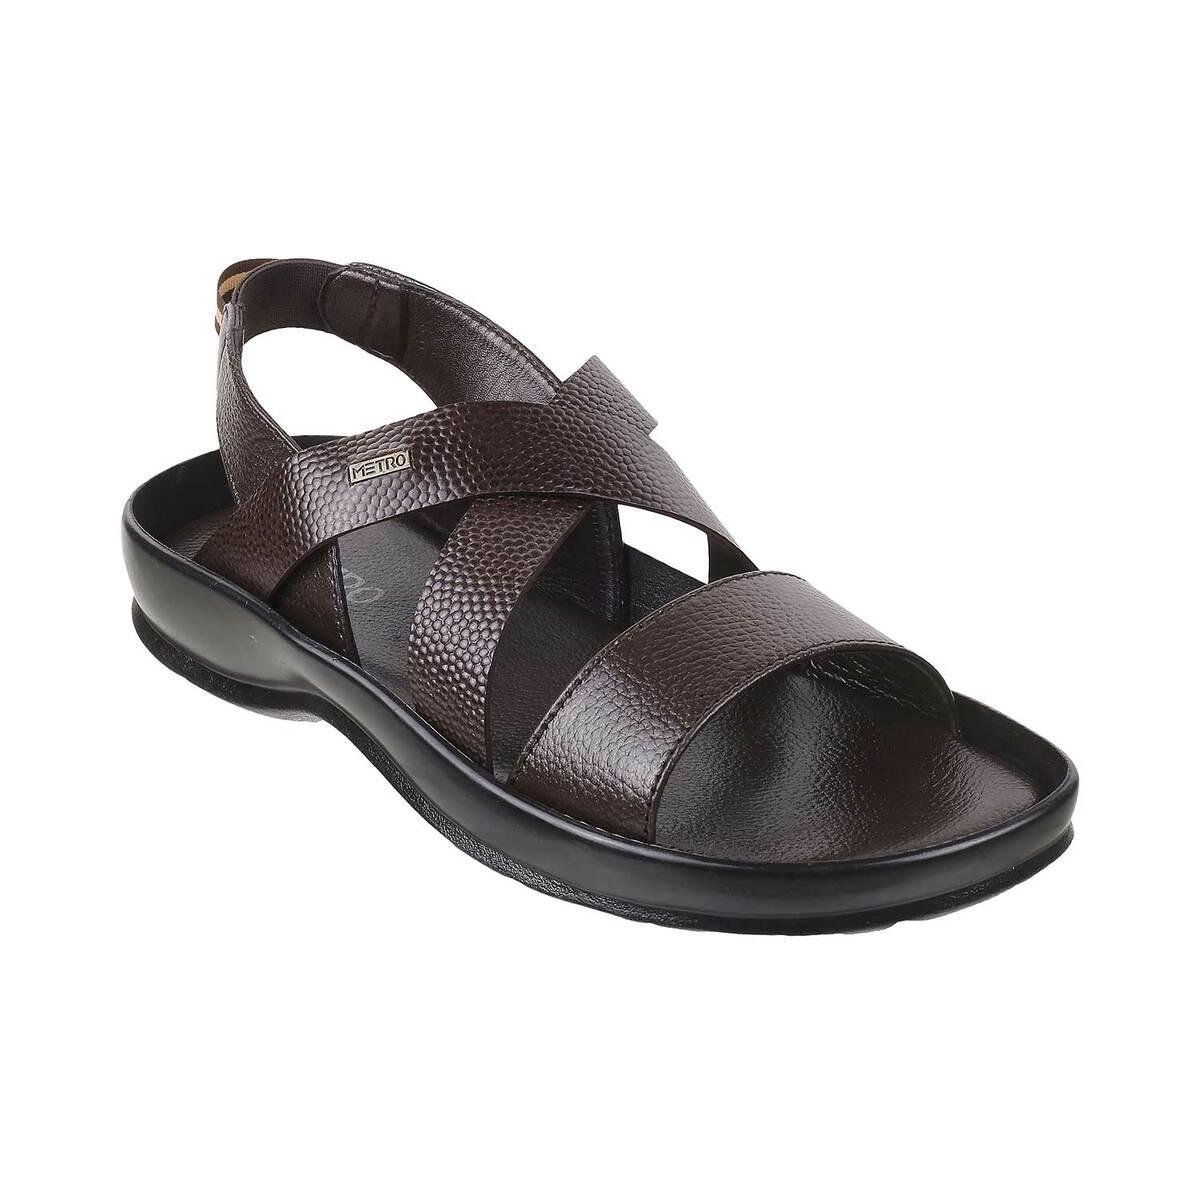 Buy Oliver Walk Black Lightweight Sandals For Men Online - Get 50% Off-sgquangbinhtourist.com.vn